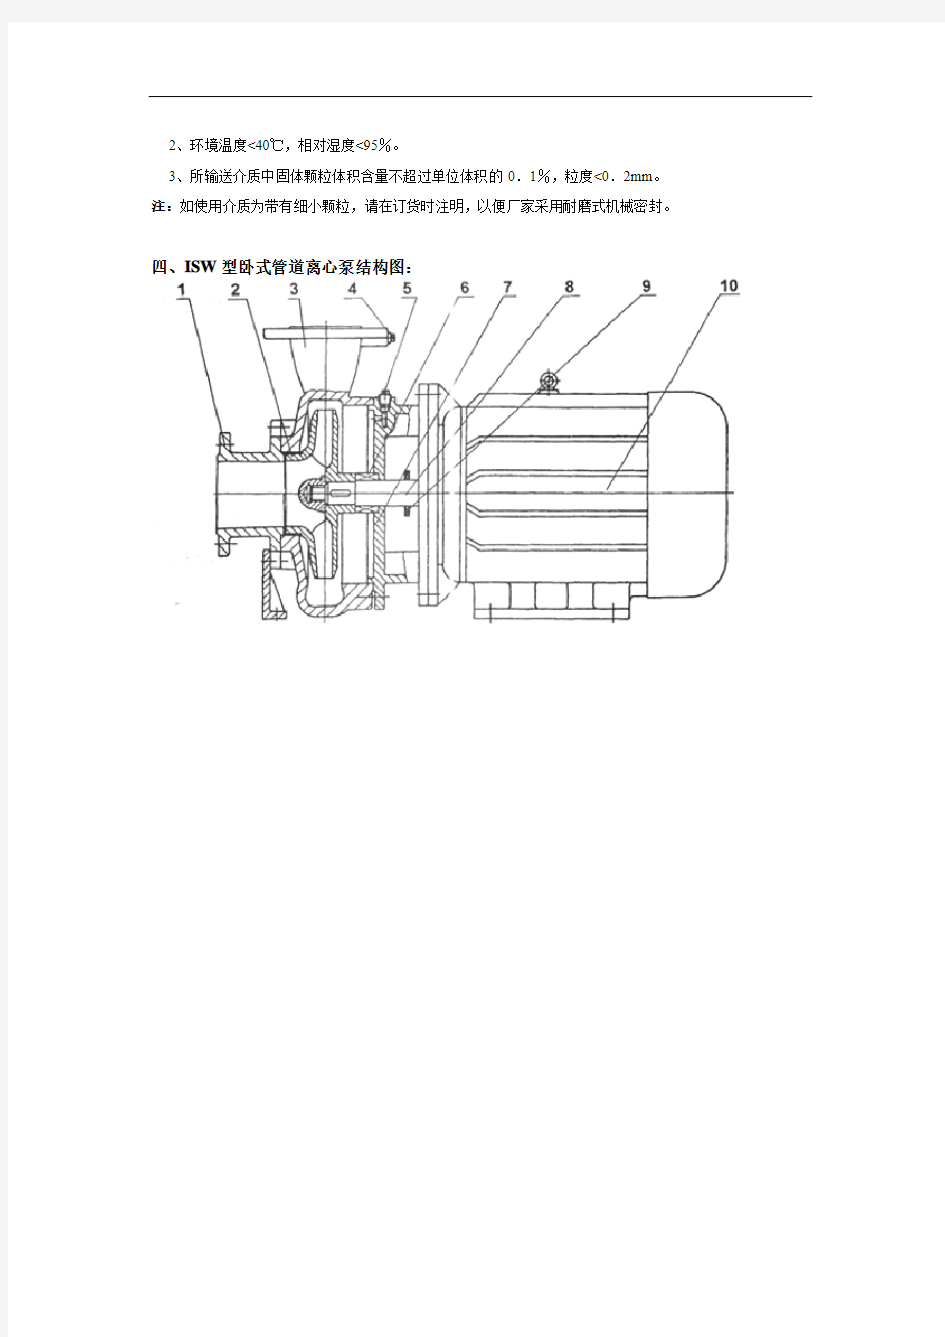 ISW卧式管道离心泵产品特点、概述及工作条件